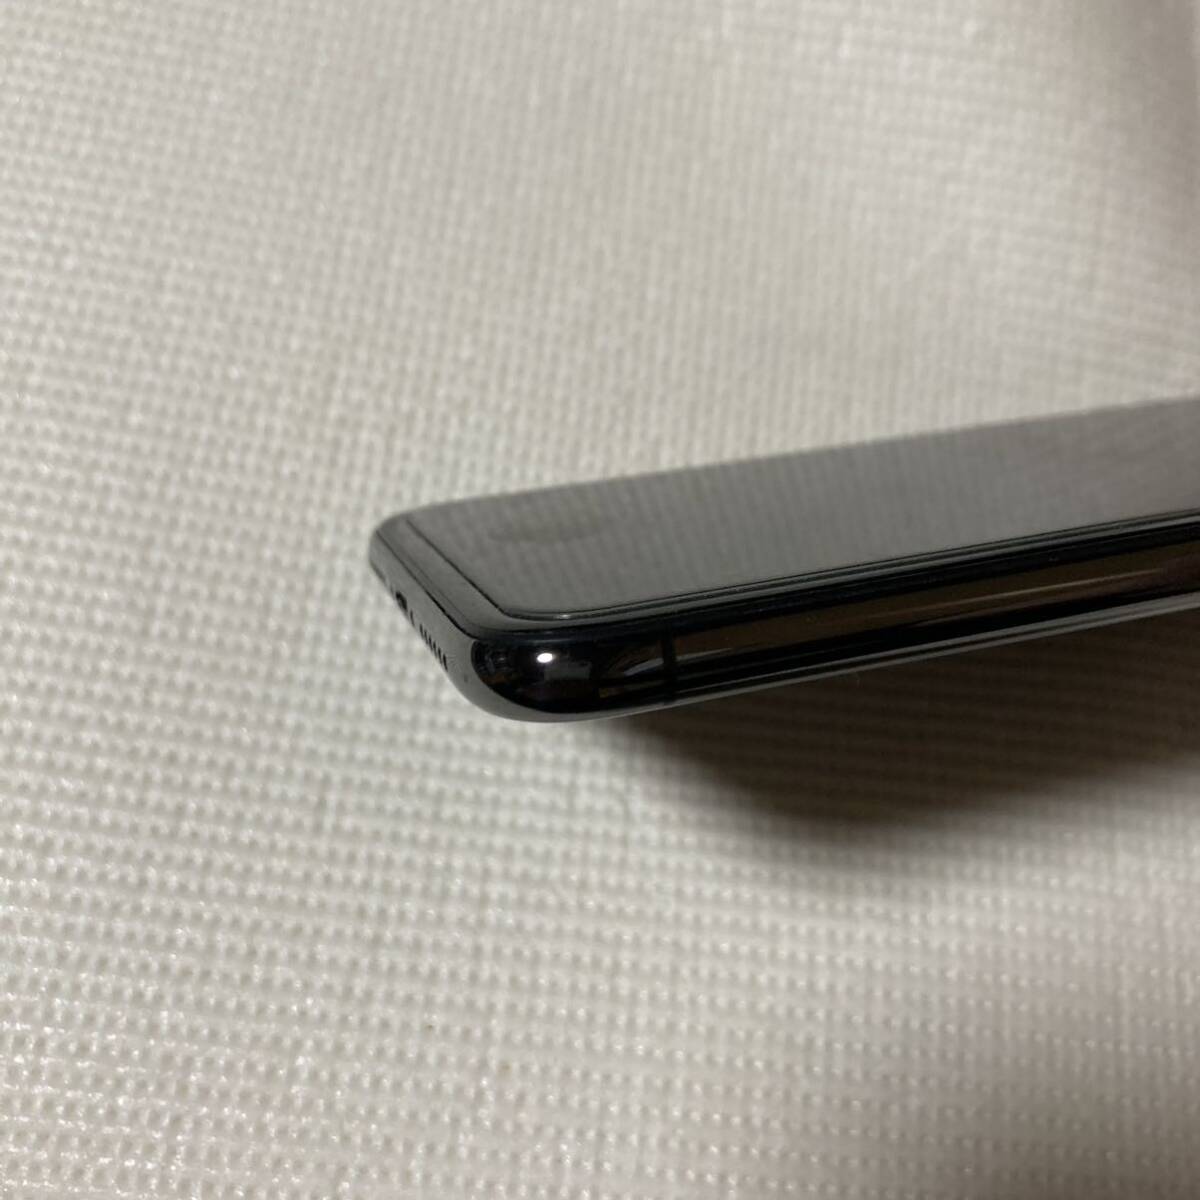 送料無料 美品 SIMフリー iPhoneX 64GB スペースグレー バッテリー最大容量100% SIMロック解除済_画像6